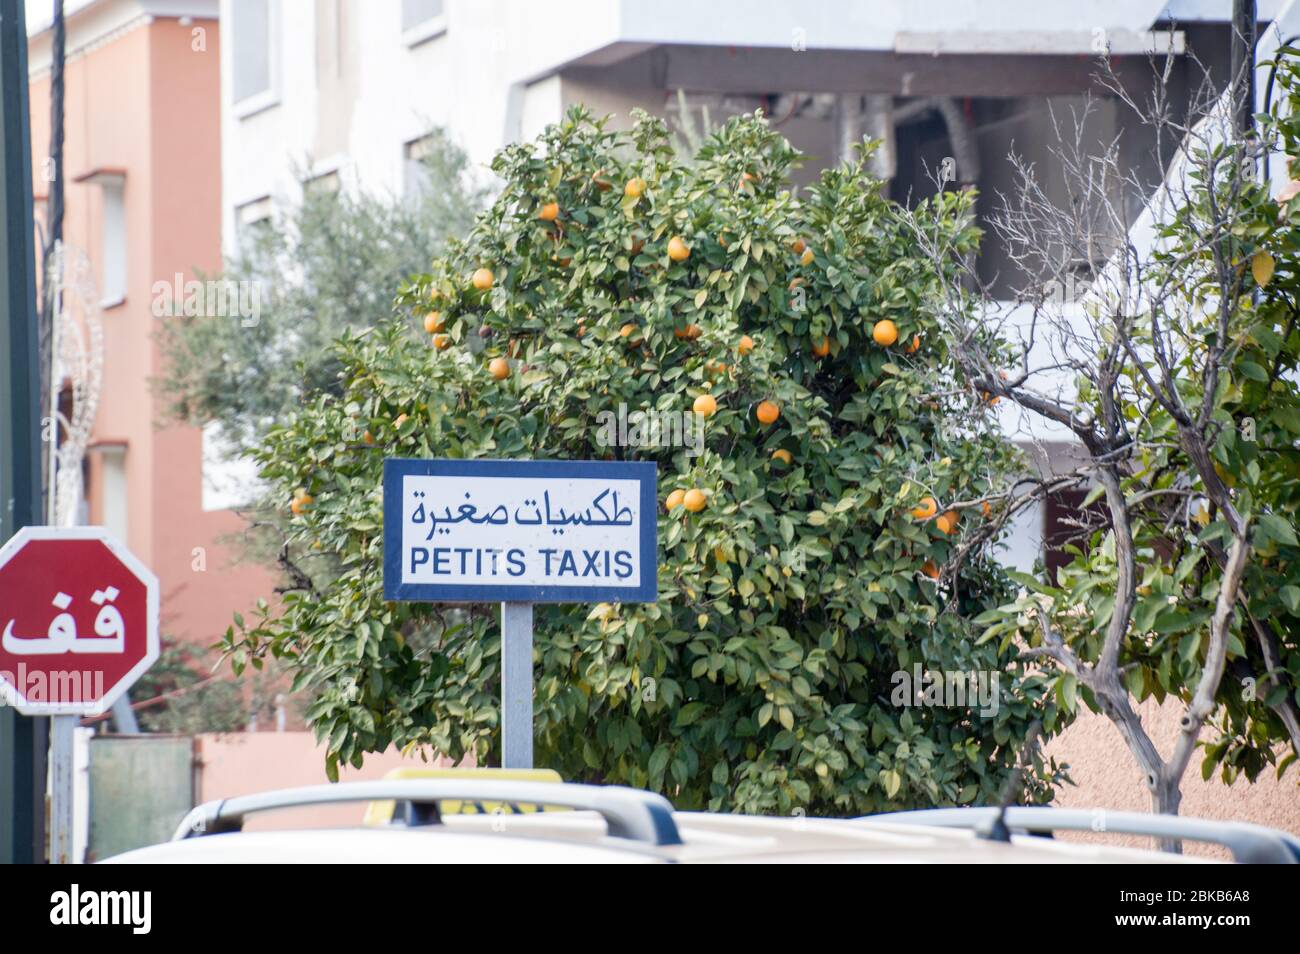 Petits taxis en Marrakech (Marrakech), ciudad con un camino de árboles de naranja en el fondo Foto de stock